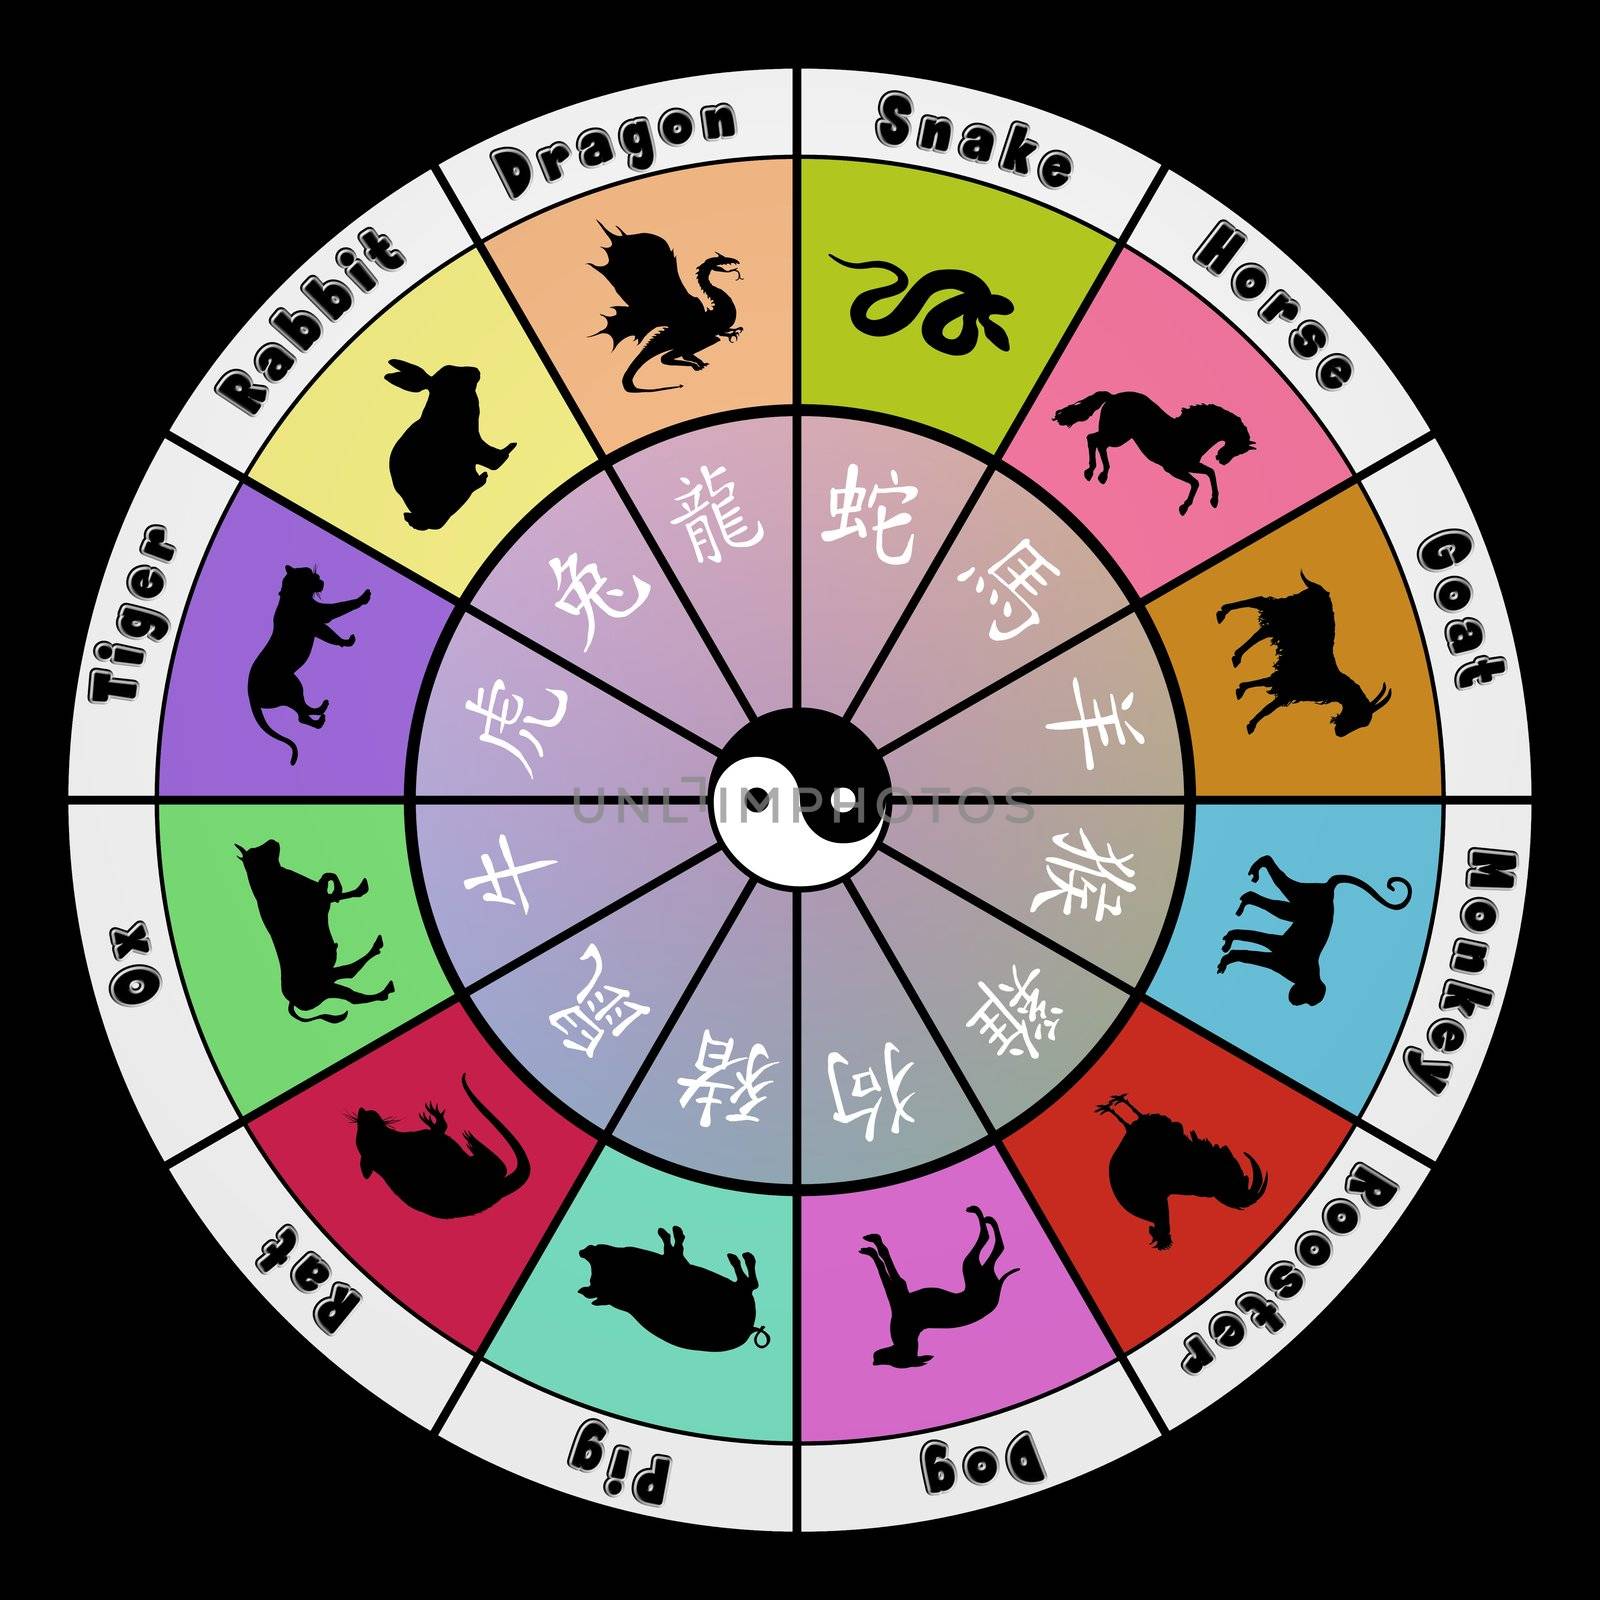 Colourful round illustration of Chinese zodiac symbols